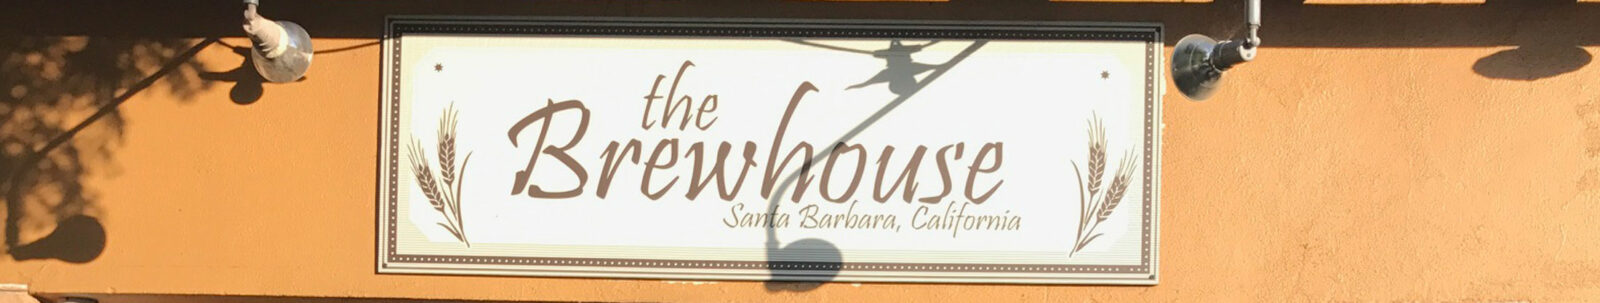 The Brewhouse, Santa Barbara